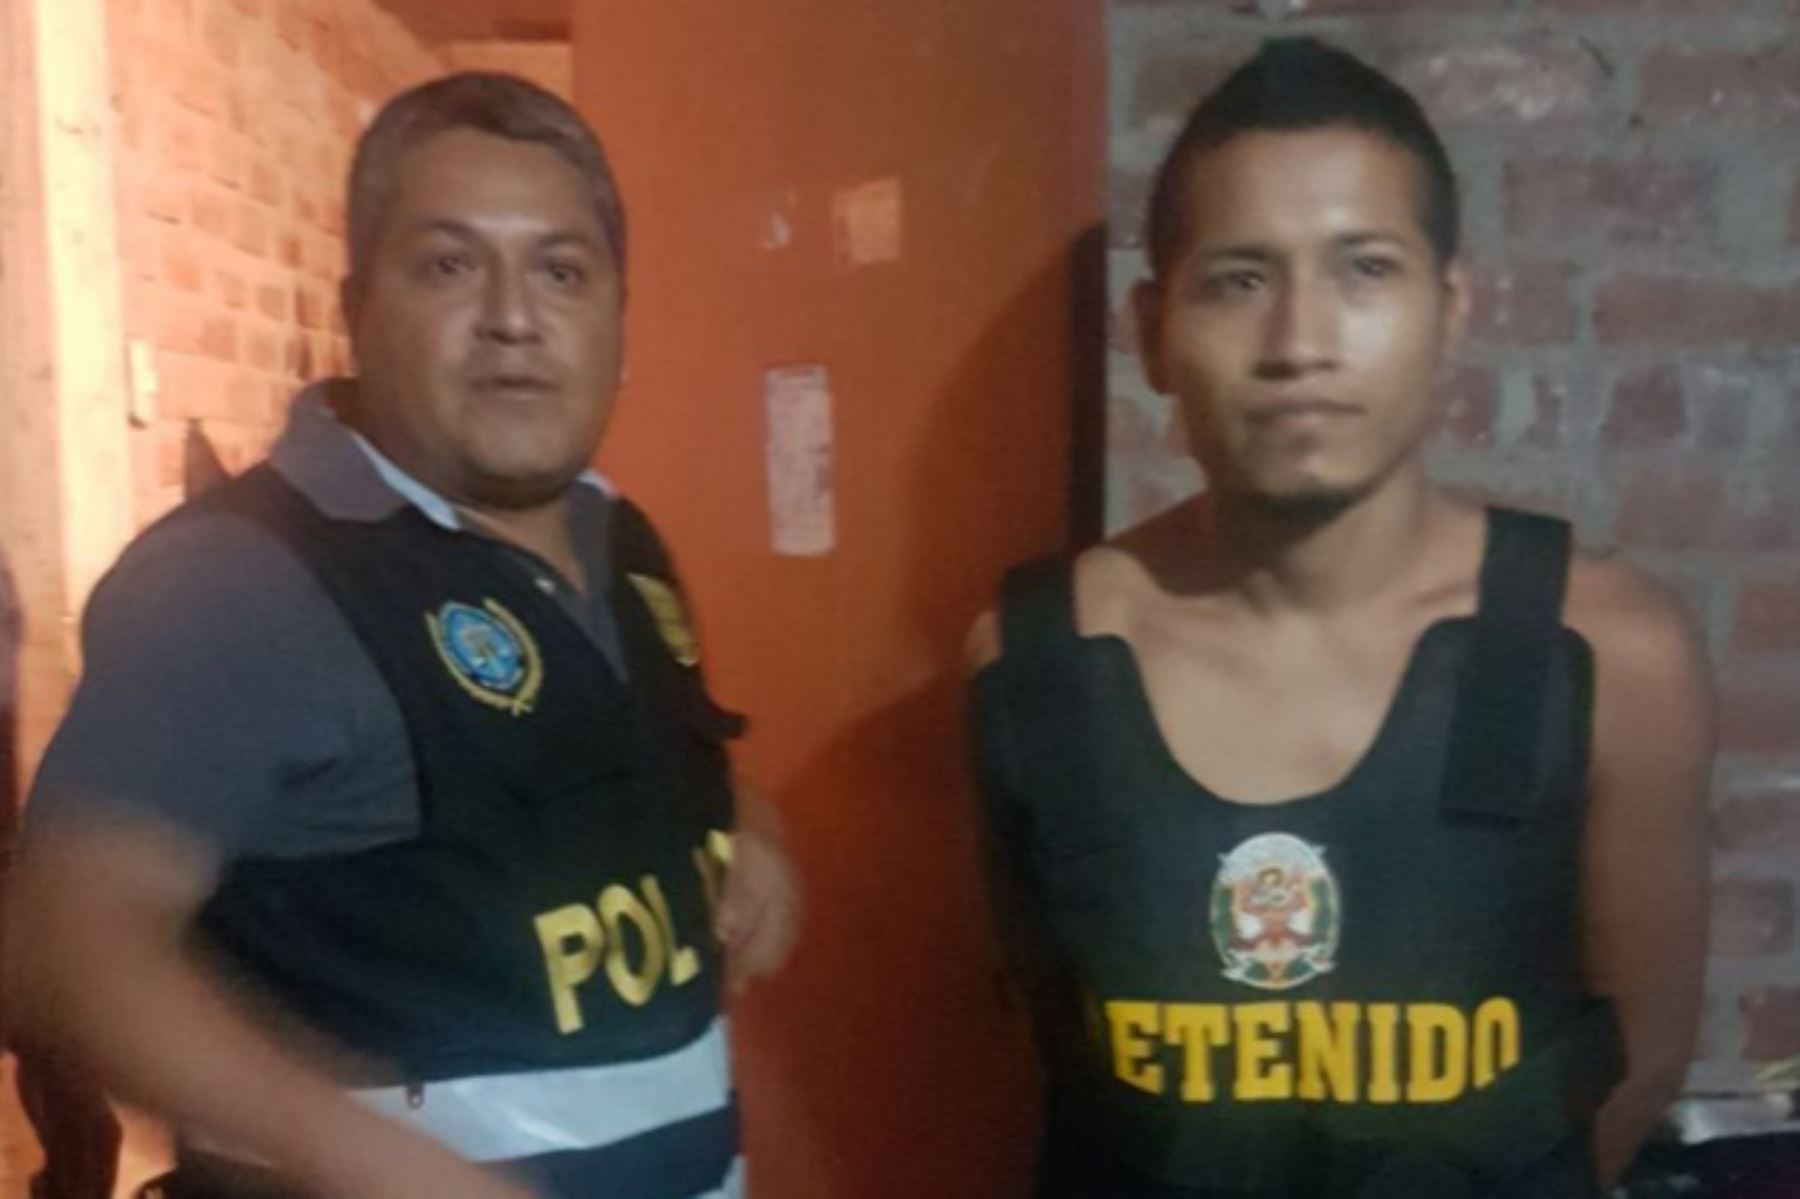 a Policía Nacional del Perú (PNP) y el Ministerio Público detuvieron hoy en Trujillo a seis integrantes de la banda criminal conocida como “Los gemelos sádicos”, dedicados al robo agravado y a la extorsión en el distrito de La Esperanza